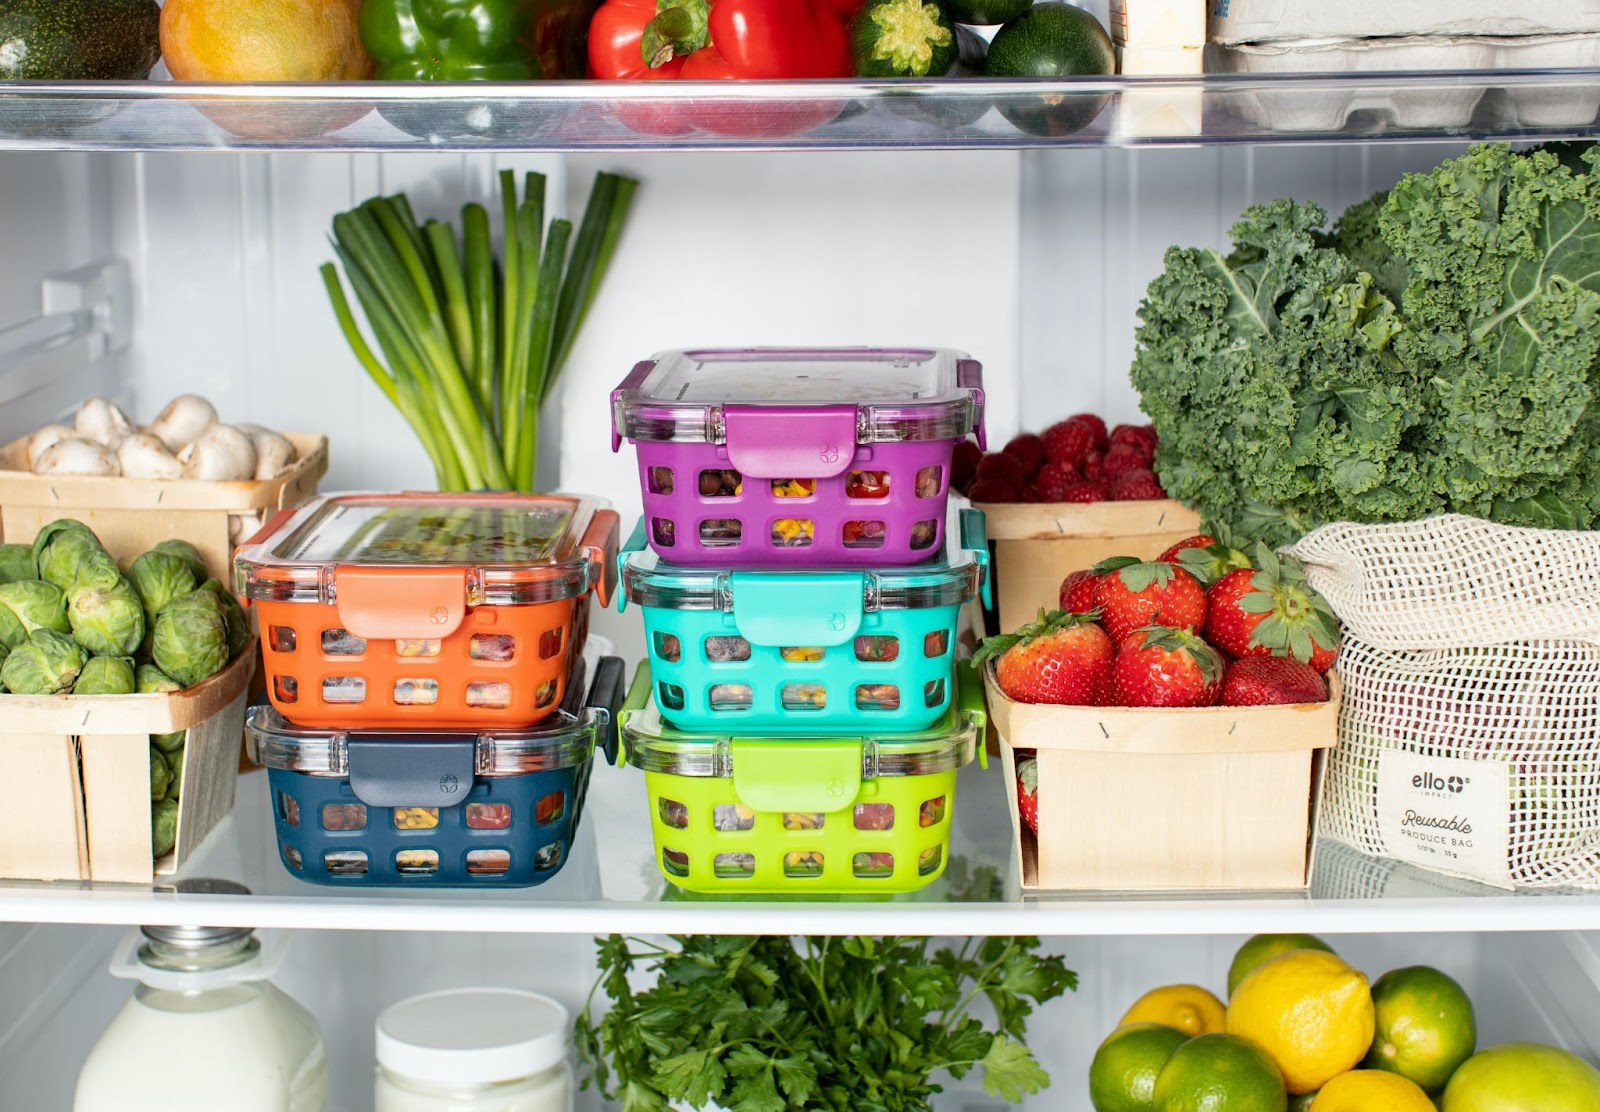 Cold storage helps in solving kitchen storage problems 